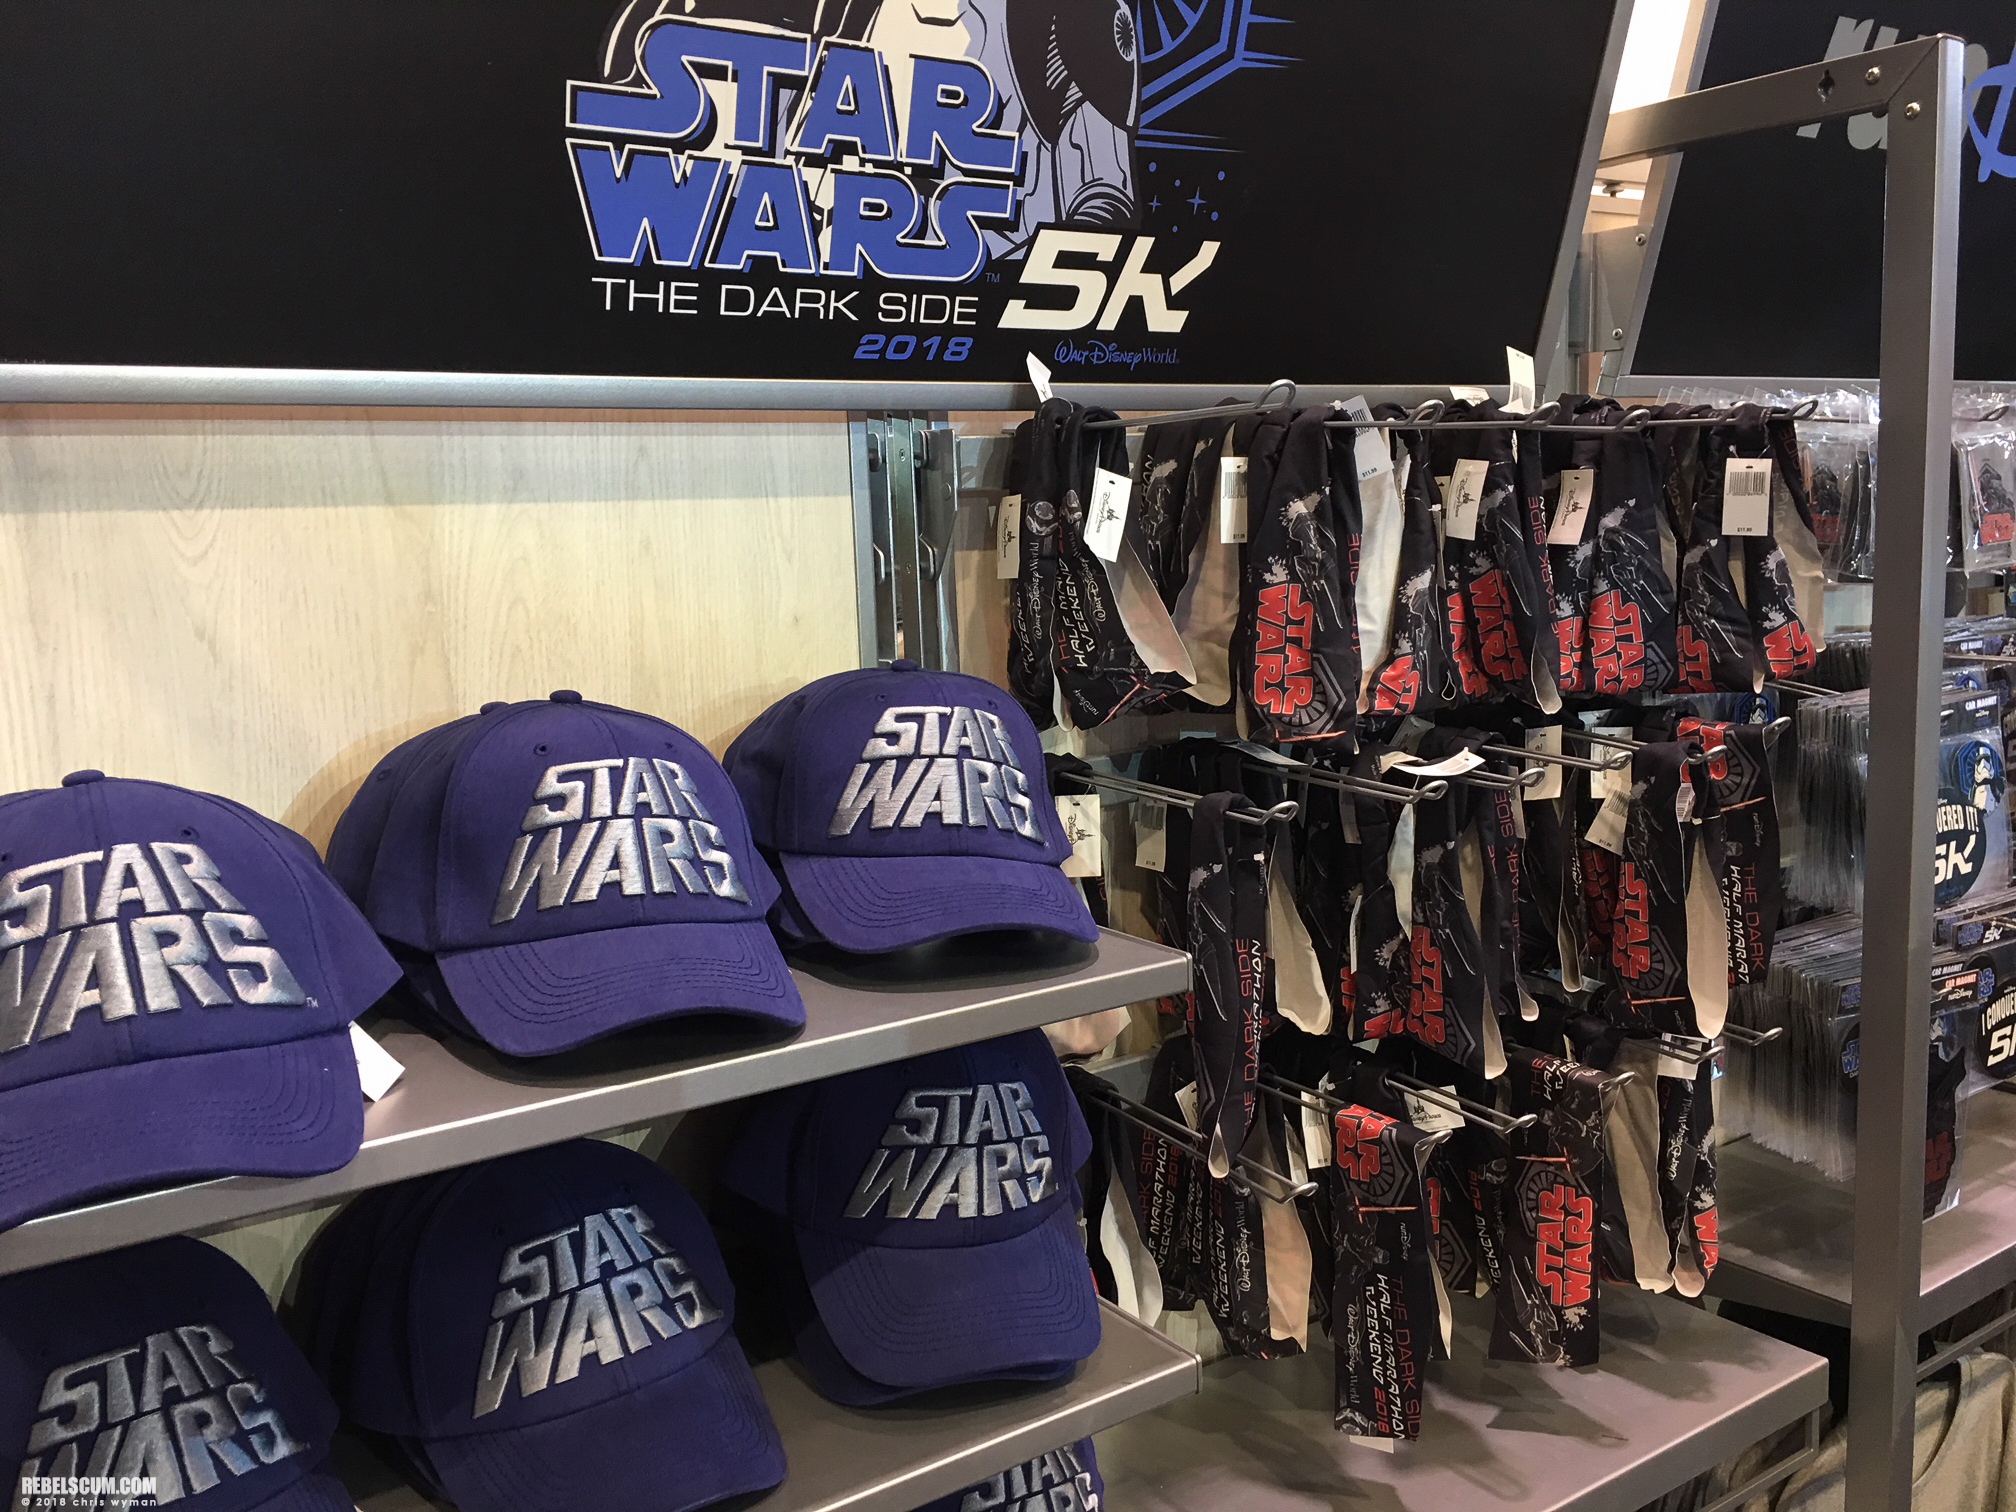 Star-Wars-Half-Marathon-The-Dark-Side-exclusives-products-044.jpg